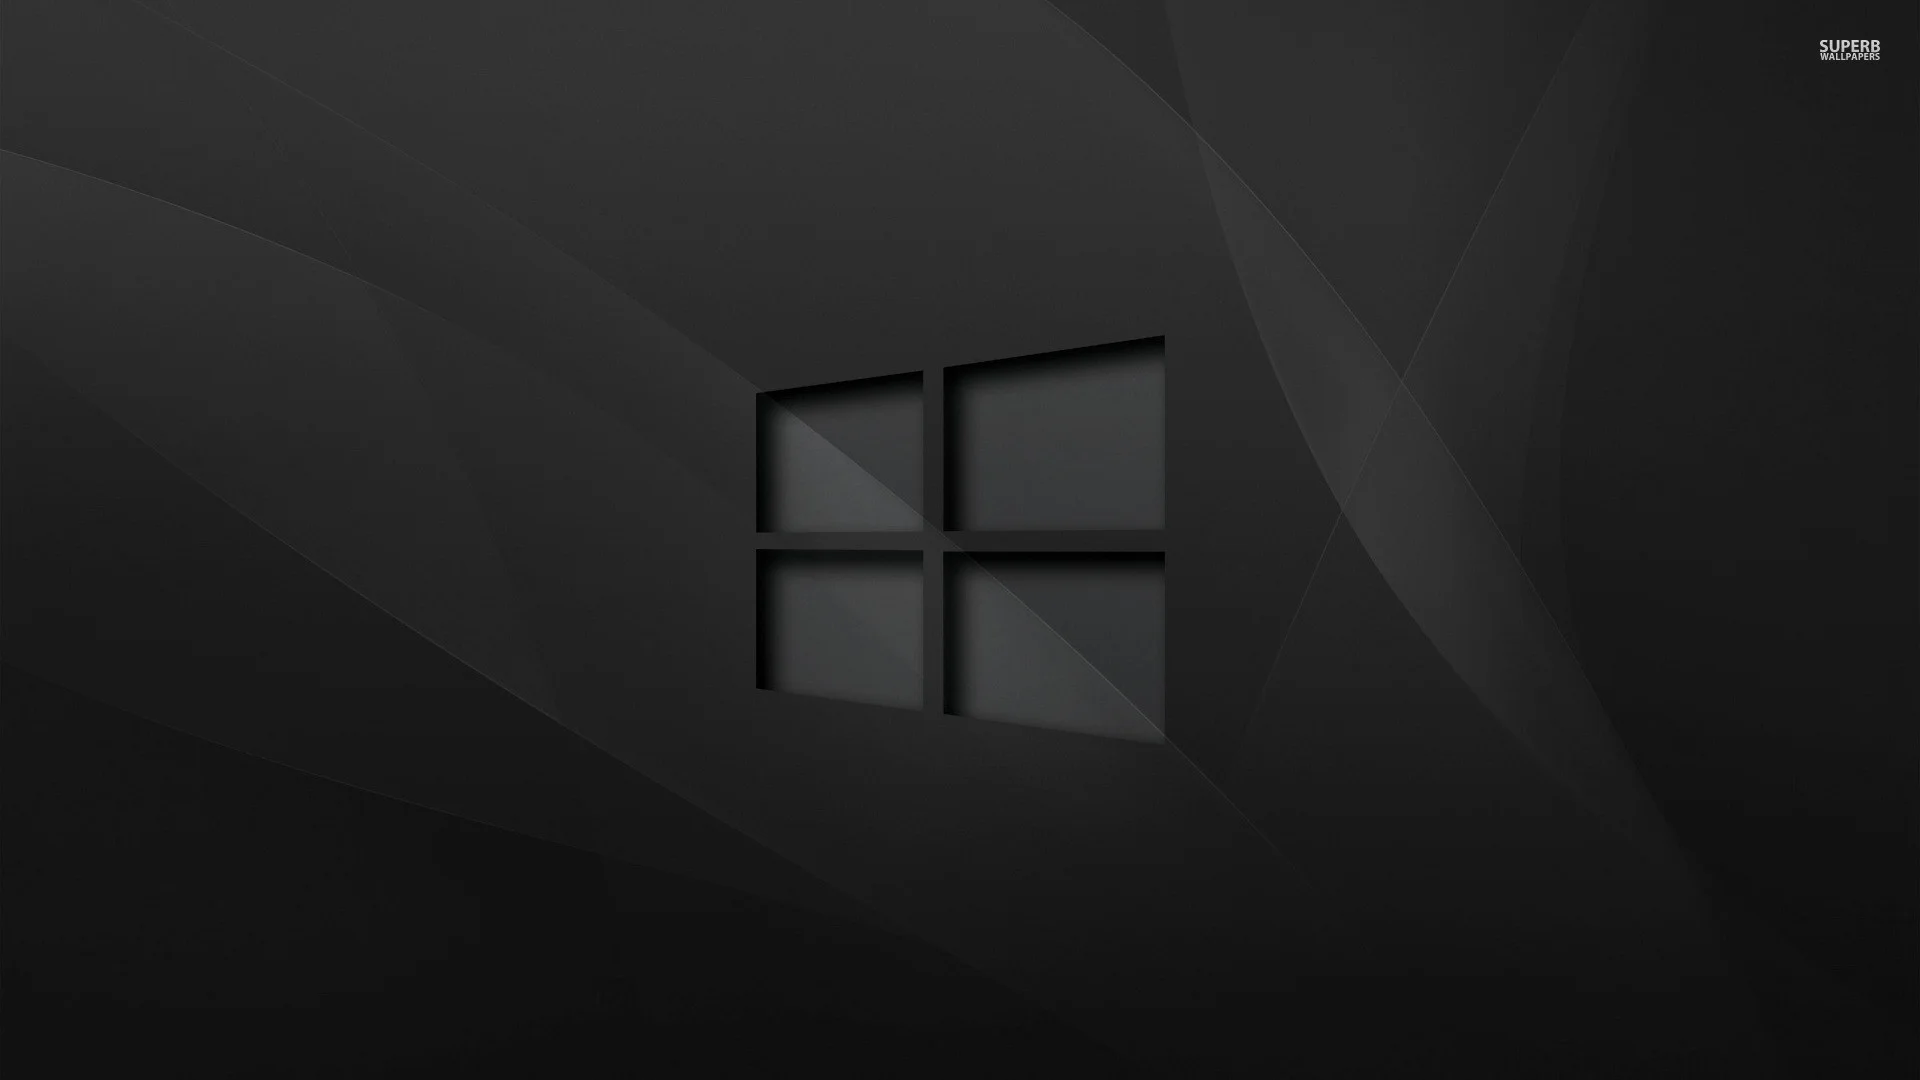 Đắm chìm trong không gian đen trên Windows 10 với những hình nền full HD đẹp mắt nhất. Hãy tận hưởng trải nghiệm đặc biệt và tải ngay cho màn hình của bạn!